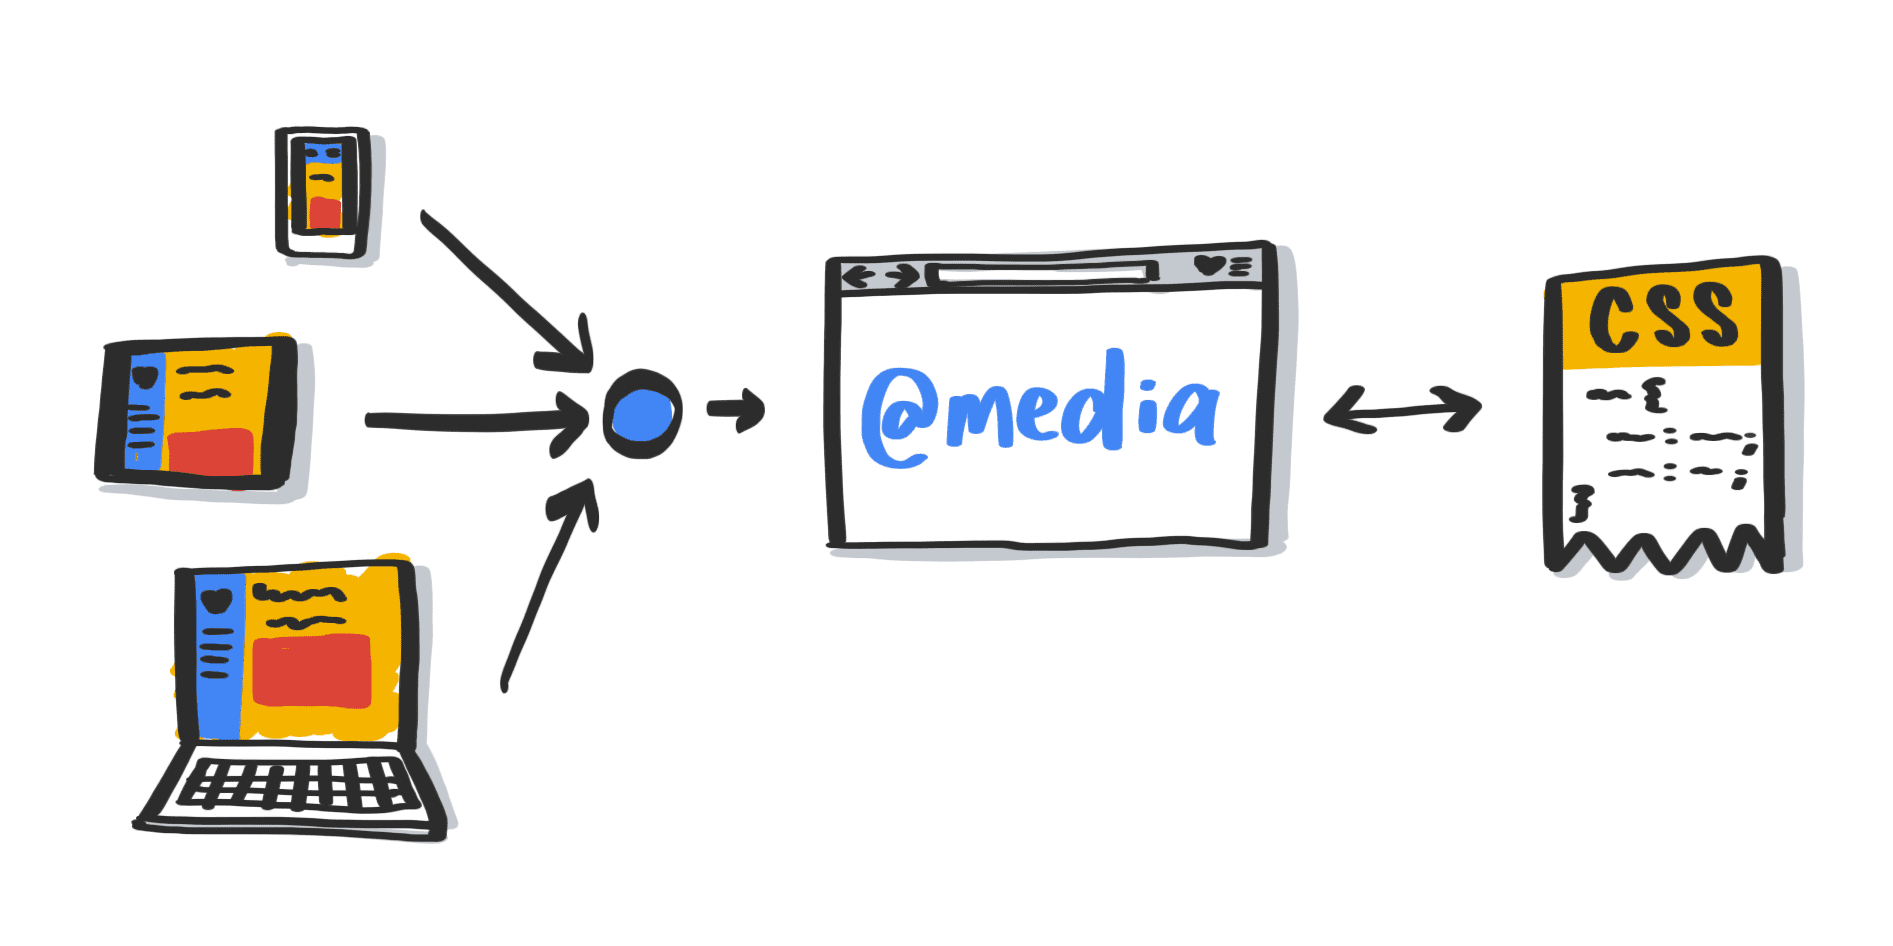 システムレベルのユーザー設定を解釈するメディアクエリを示す図。